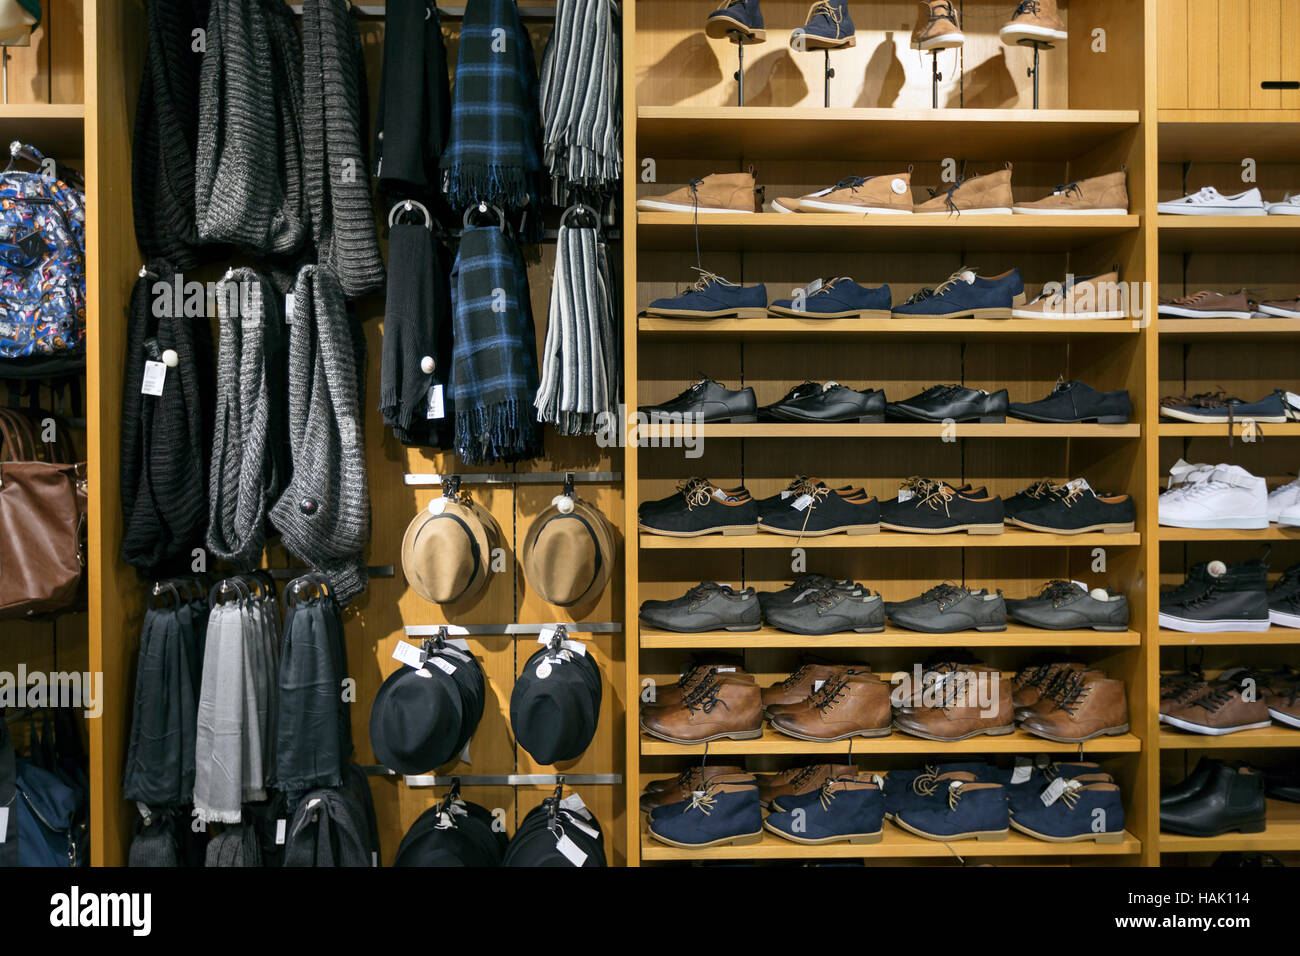 Los estantes con zapatos y accesorios en la tienda de ropa Foto de stock